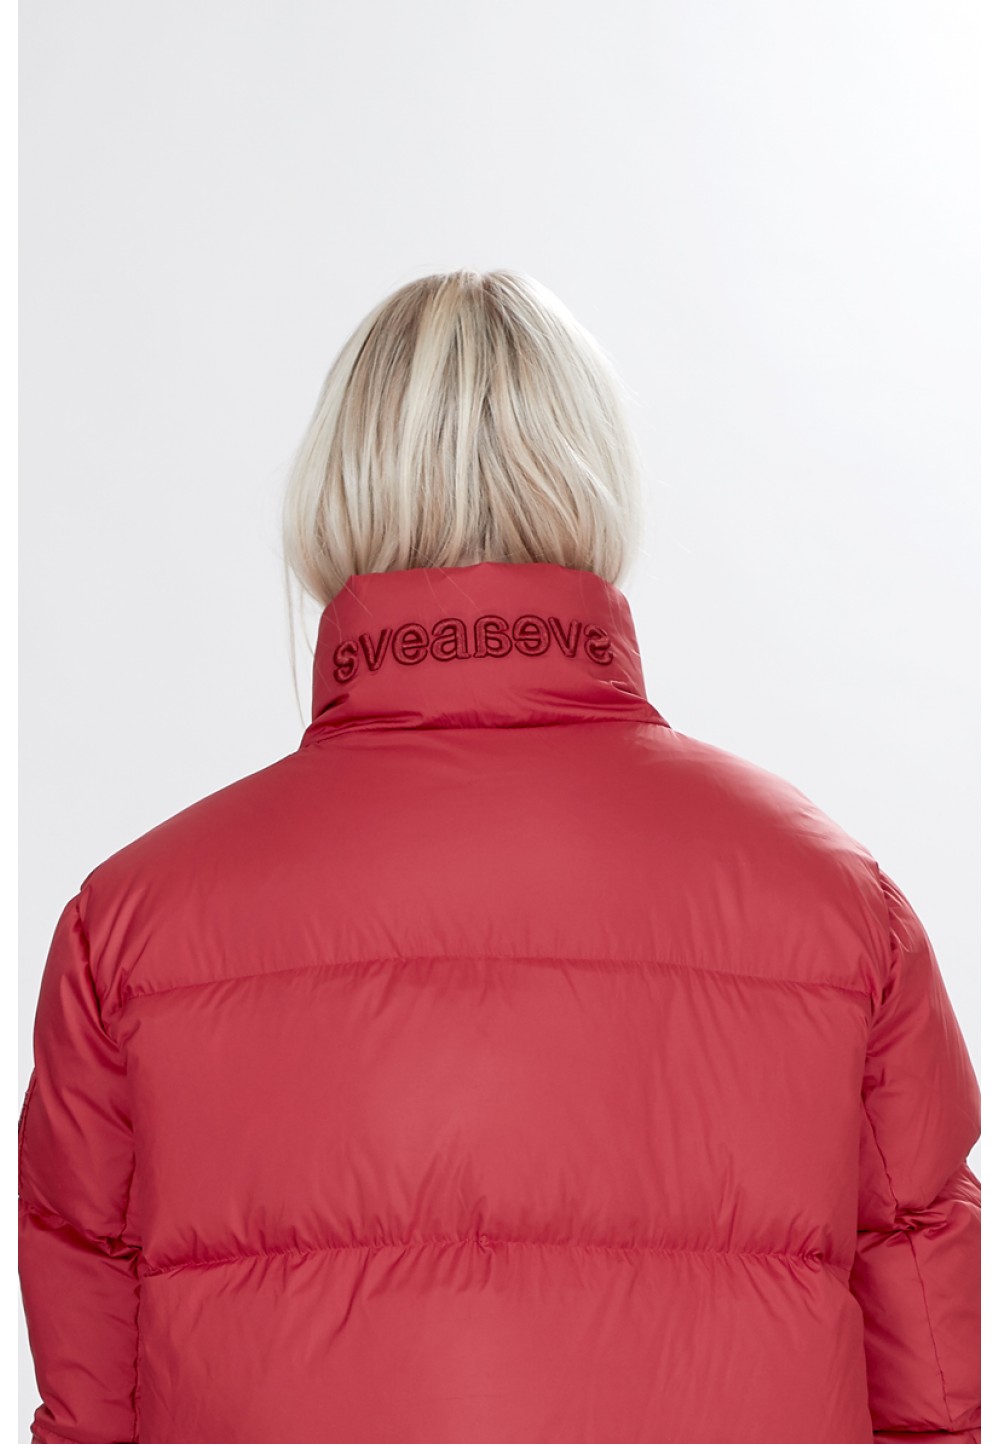 Широкая красная куртка-пальто